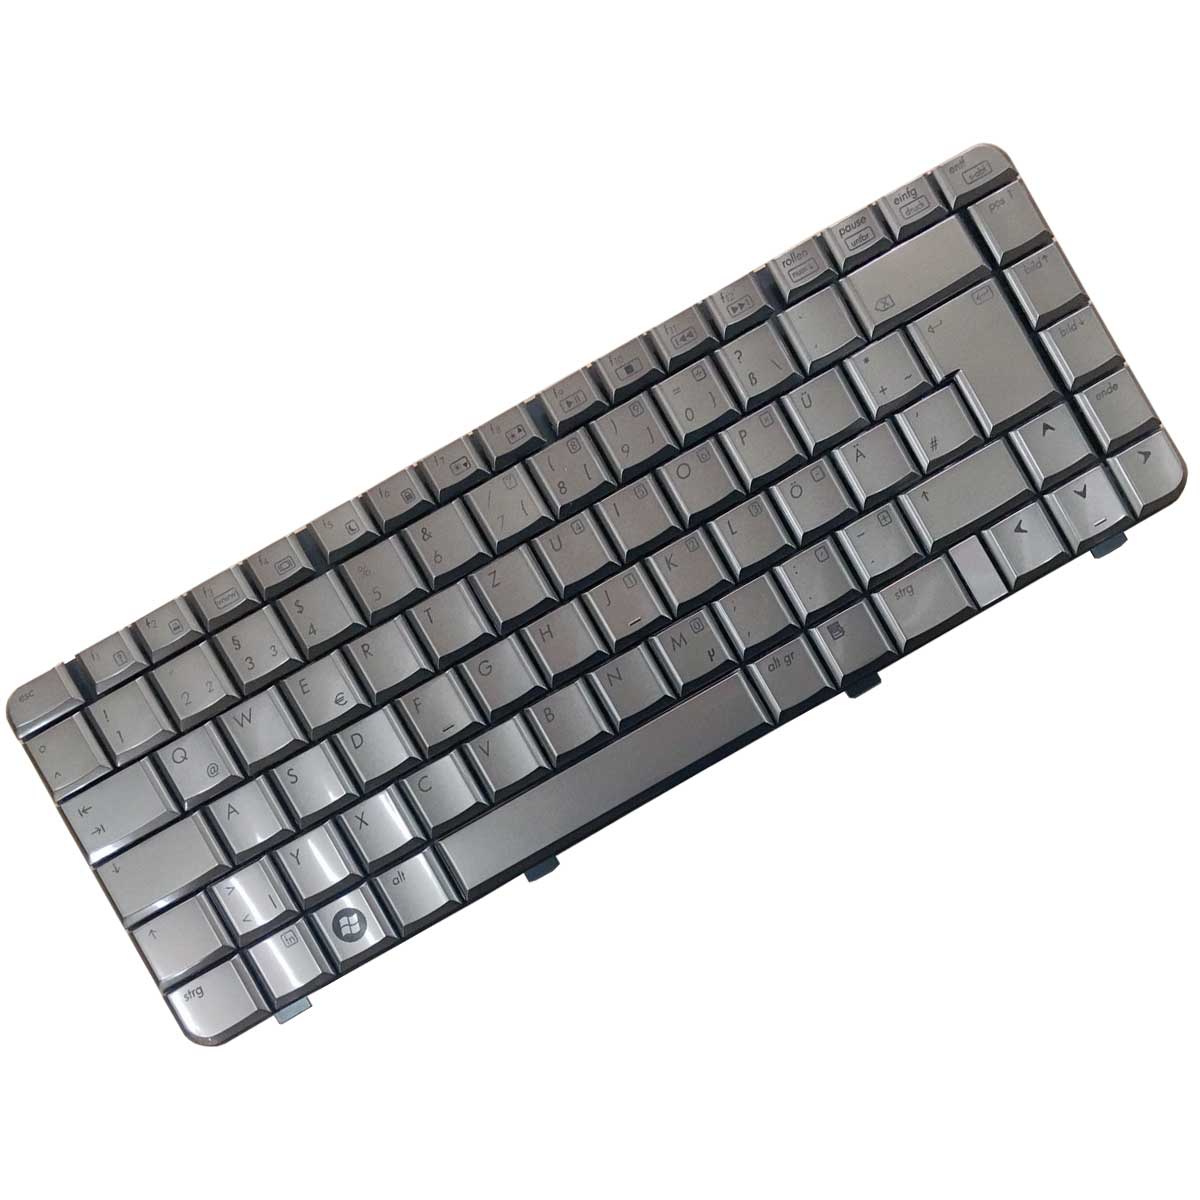 کیبورد لپ تاپ اچ پی Keyboard Laptop Hp DV3500